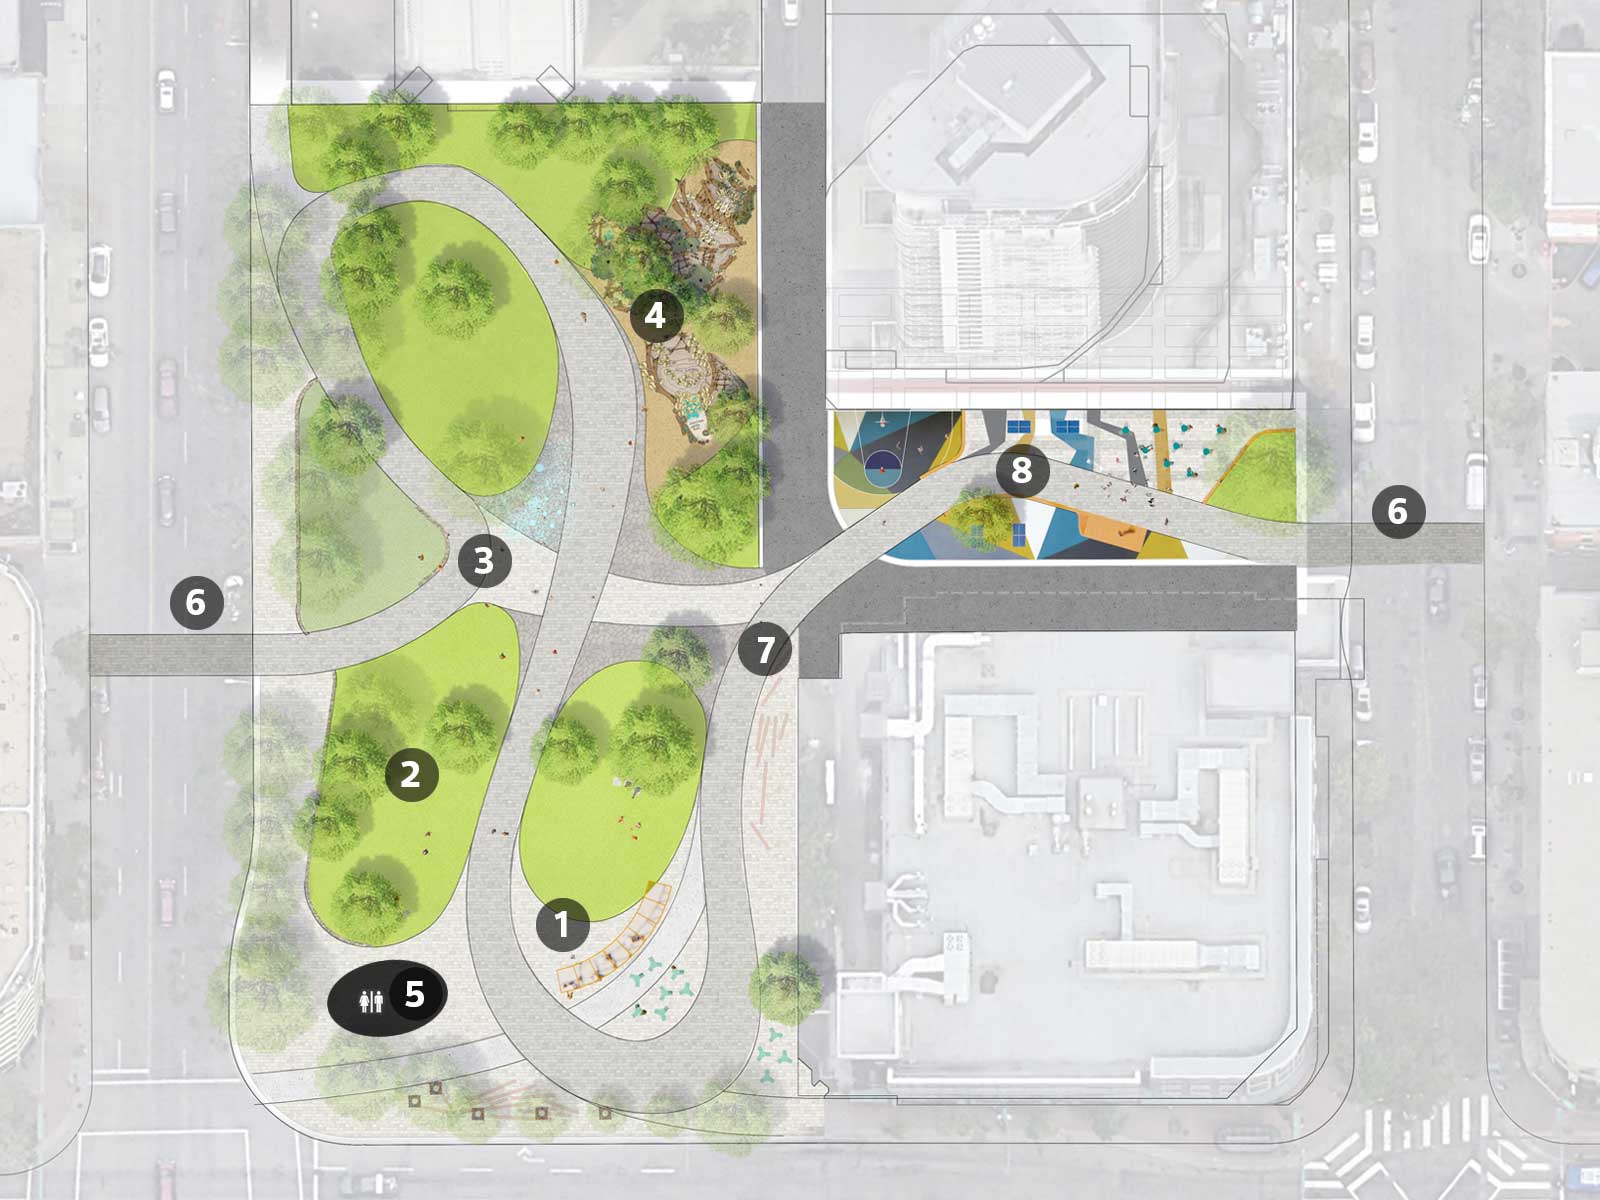 Concept Option 2 Plan View: Beaver Hills House Park